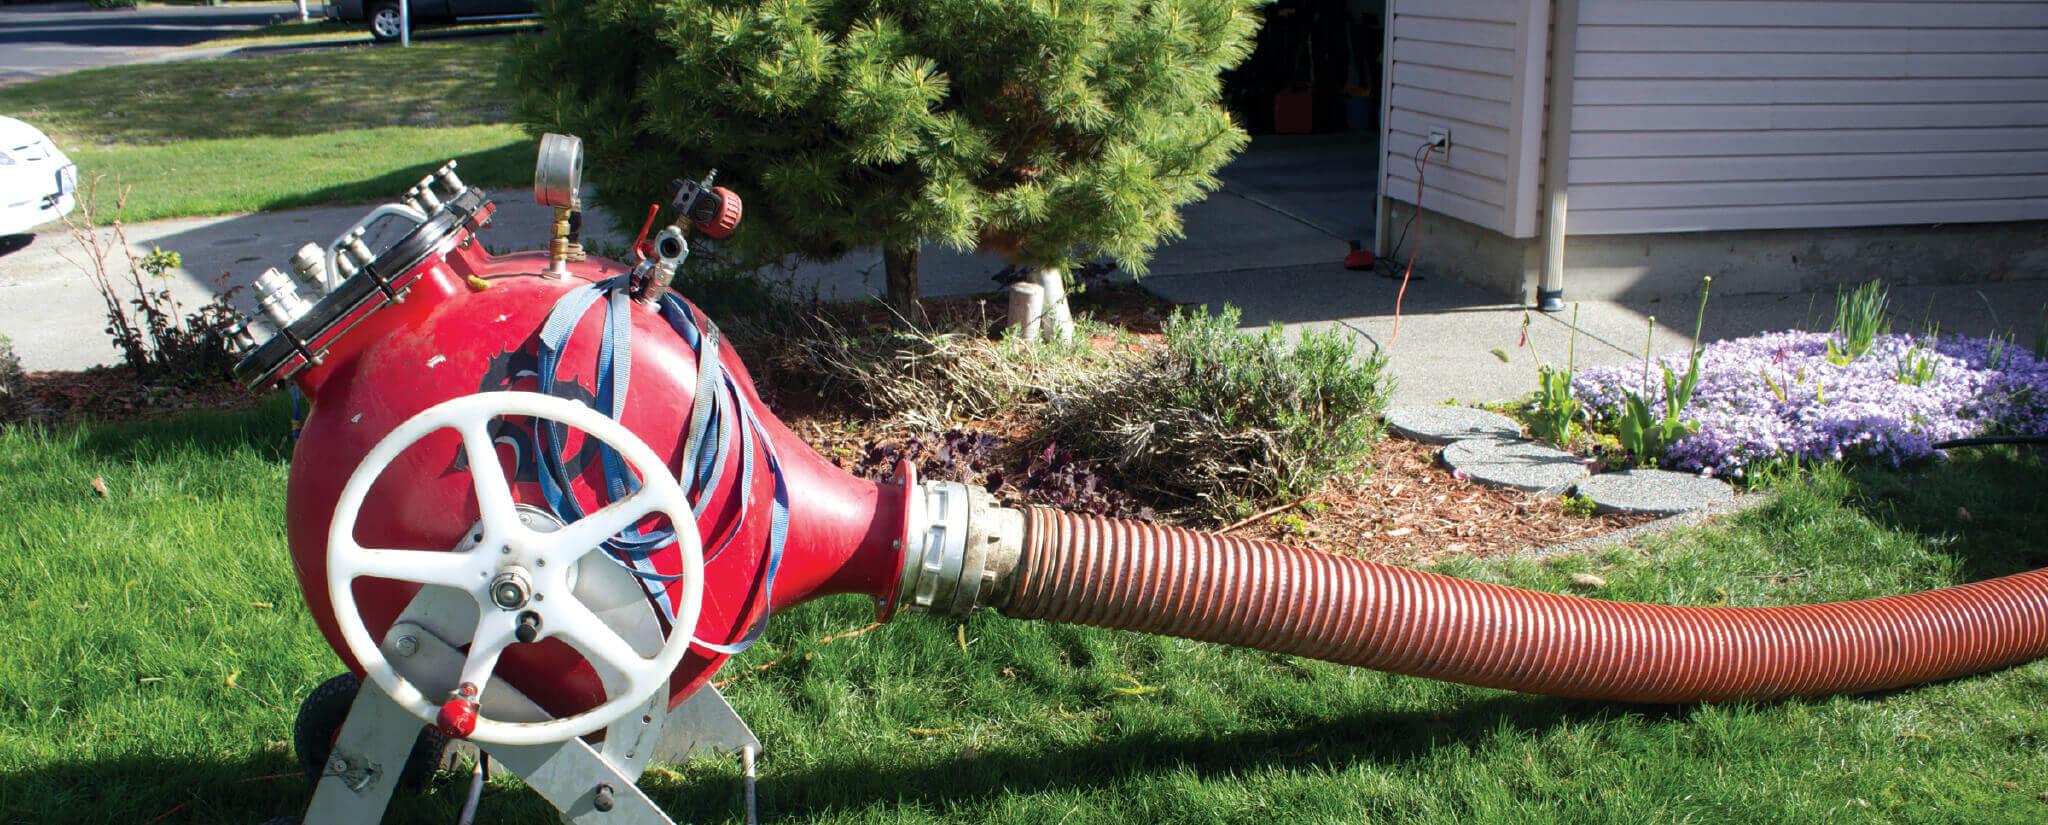 Product Sewer Repair Utah | Plumbers Logan Utah |  Restore Pipe image